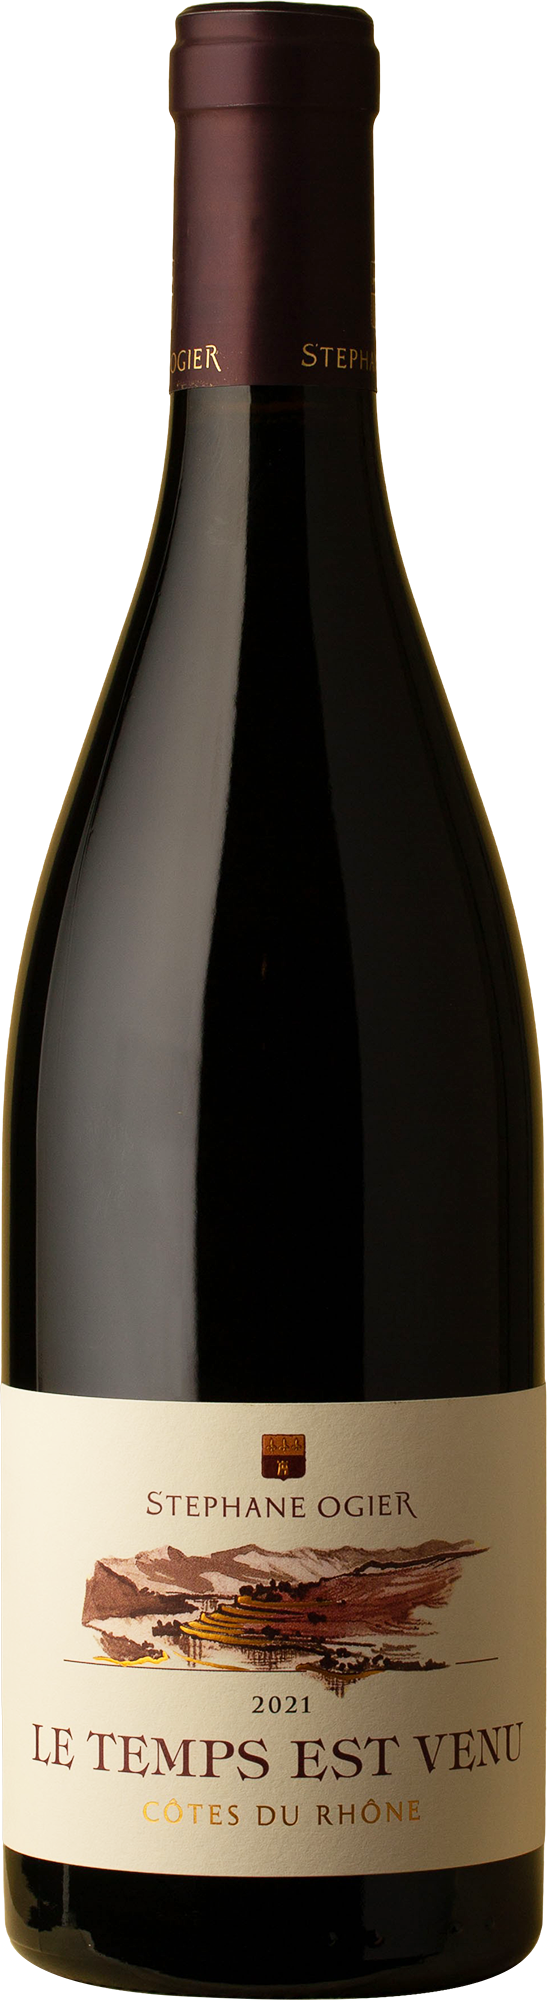 Stephane Ogier - Le Temps Est Venu Cotes du Rhone Grenache Blend 2021 Red Wine